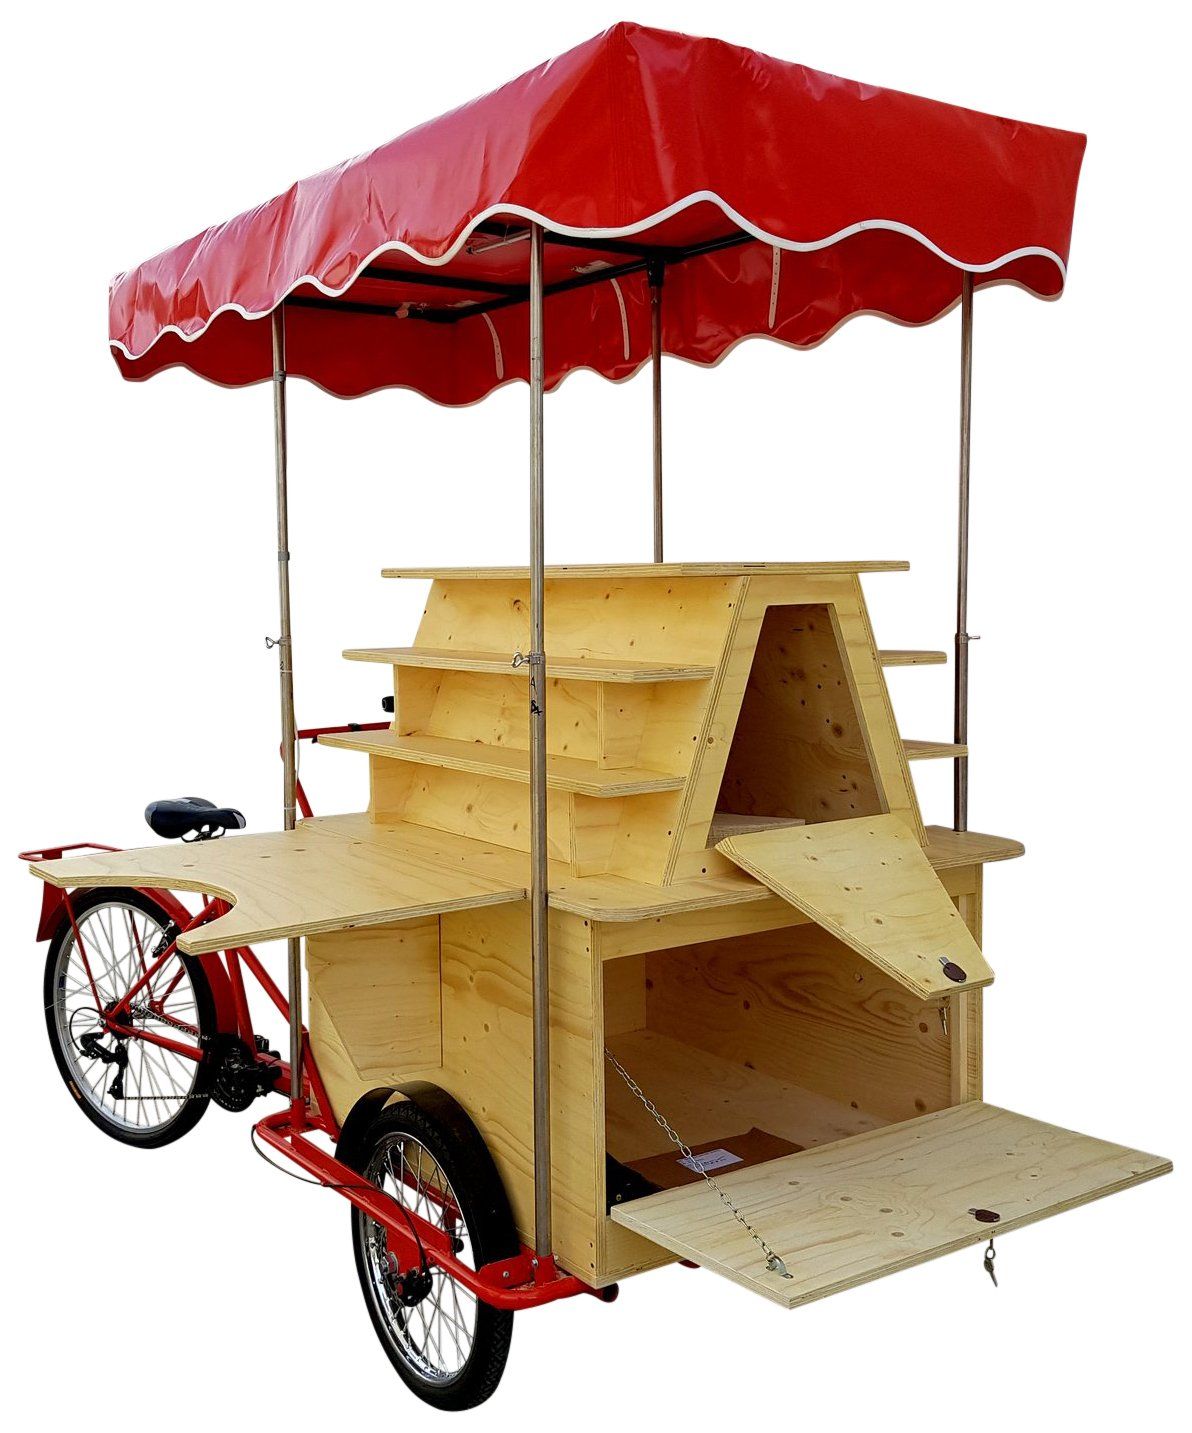 triciclo cargo bike bancarella vendita ambulante libri giornali edicola displai oggettistica souvenir